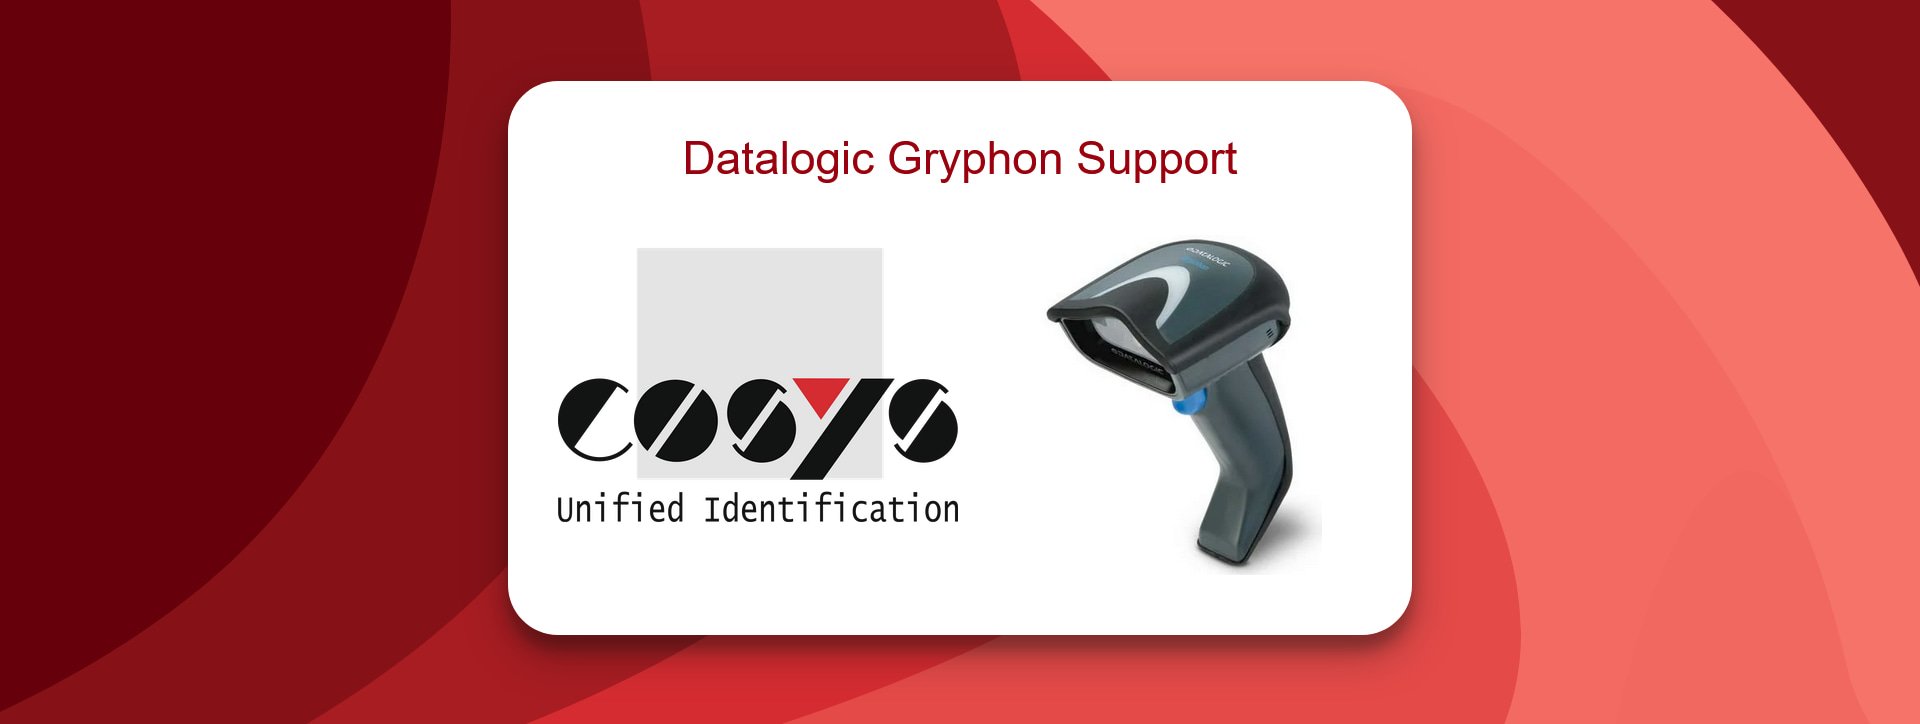 Wie Datalogic Gryphon Support ROI verbessert